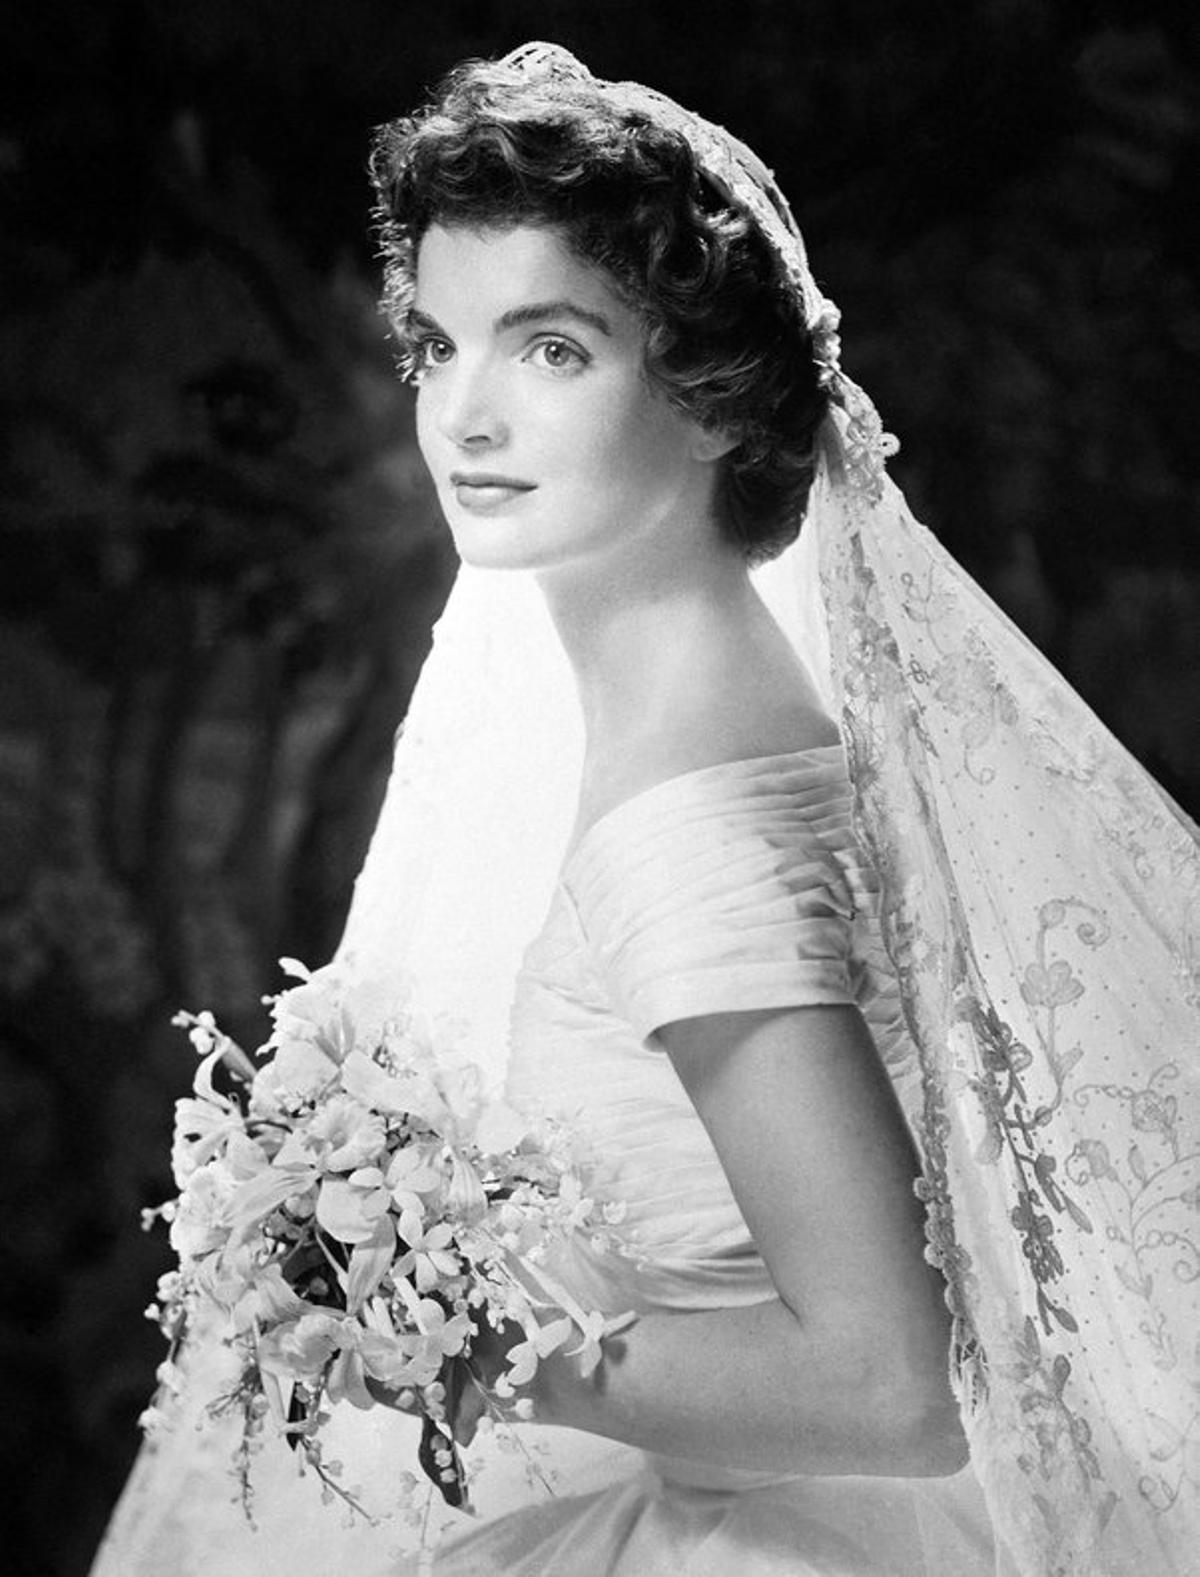 El vestido de novia de Jackqueline Kennedy, un modelo color marfil en tafetán de seda con escote barco, sigue siendo hoy en día uno de los ’looks’ nupciales más imitados.   